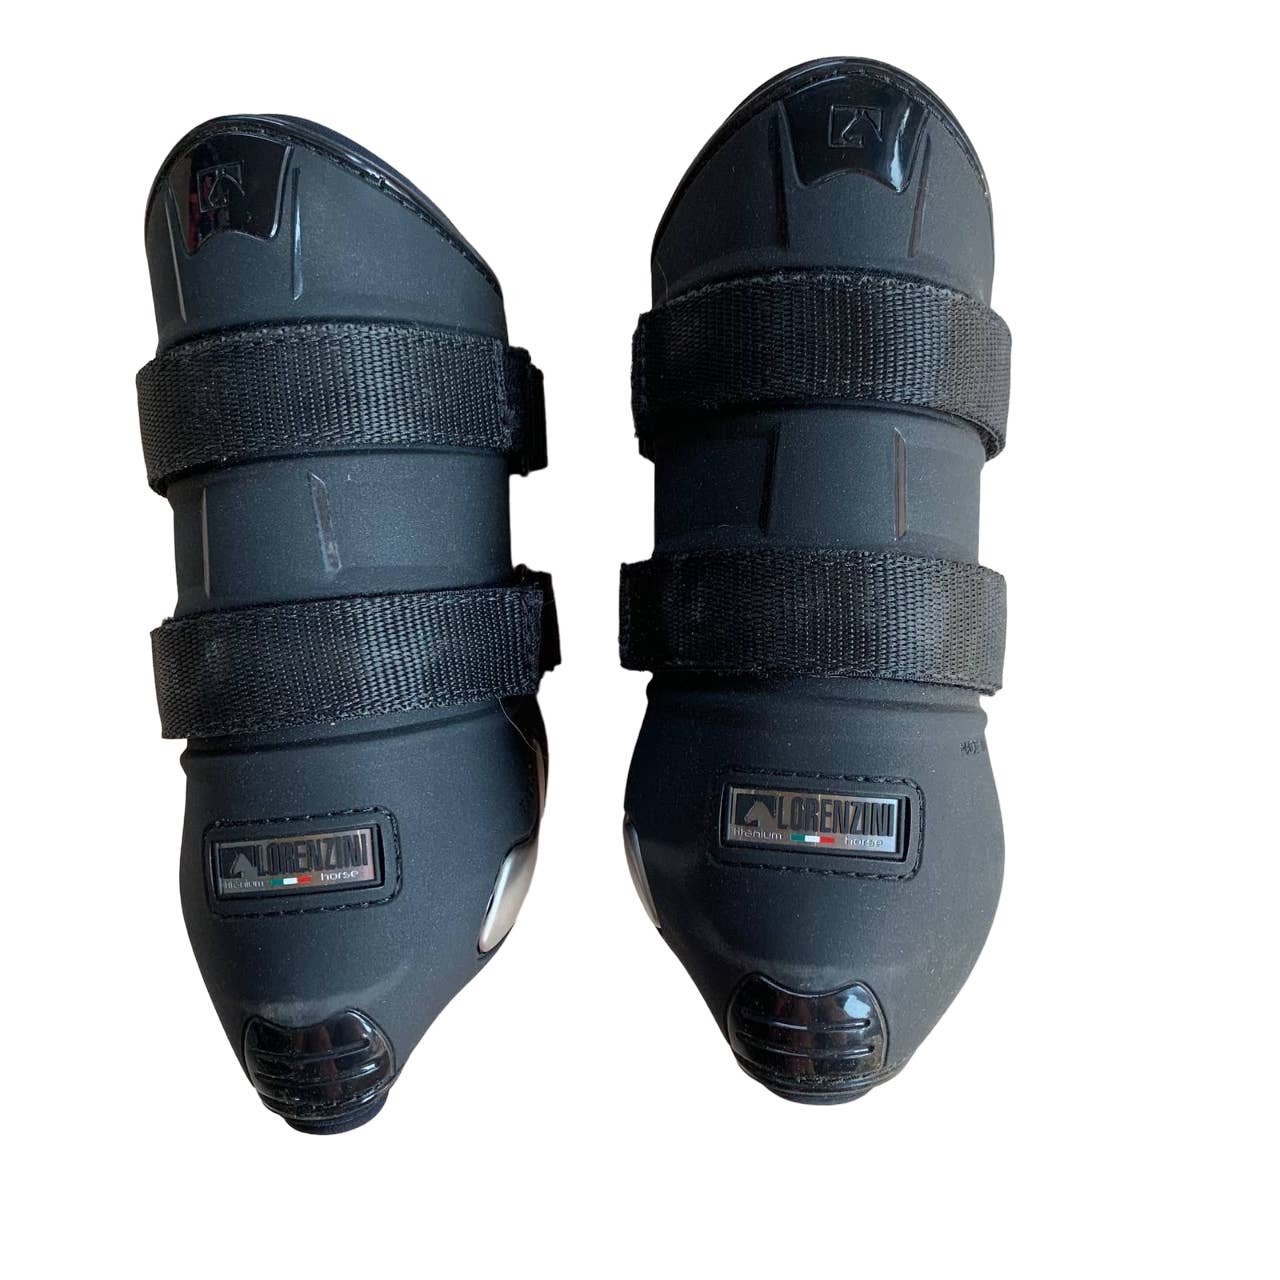 Lorenzini 'Paranocca' Jump Boots in Black - Medium